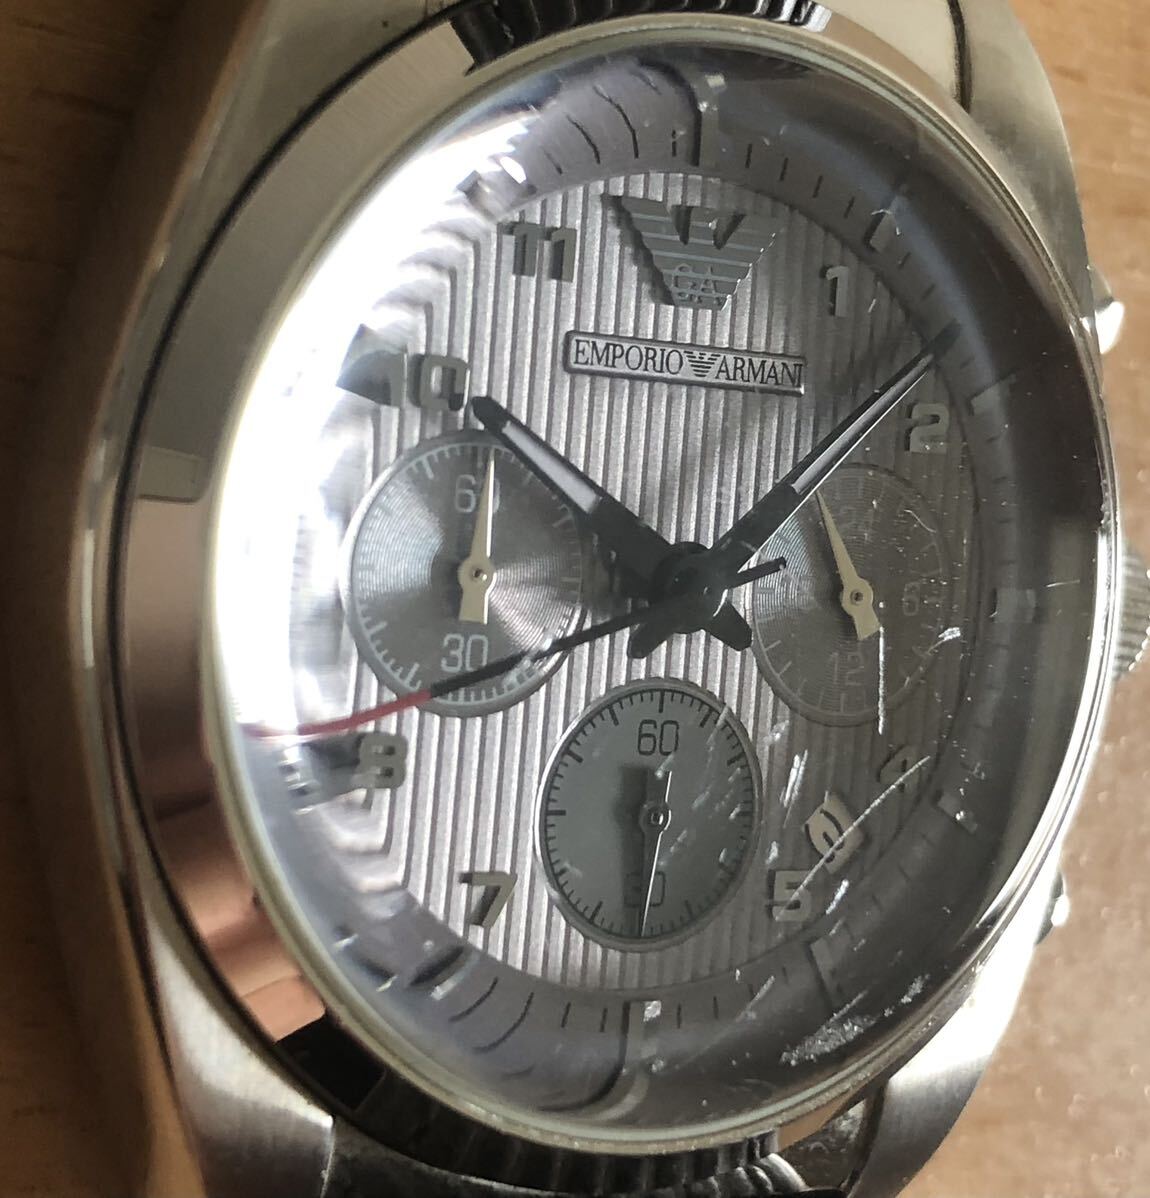 291-0362 EMPORIO ARMANI Emporio Armani мужские наручные часы кожа ремень кварц хронограф AR-0370 разряженная батарея работоспособность не проверялась 